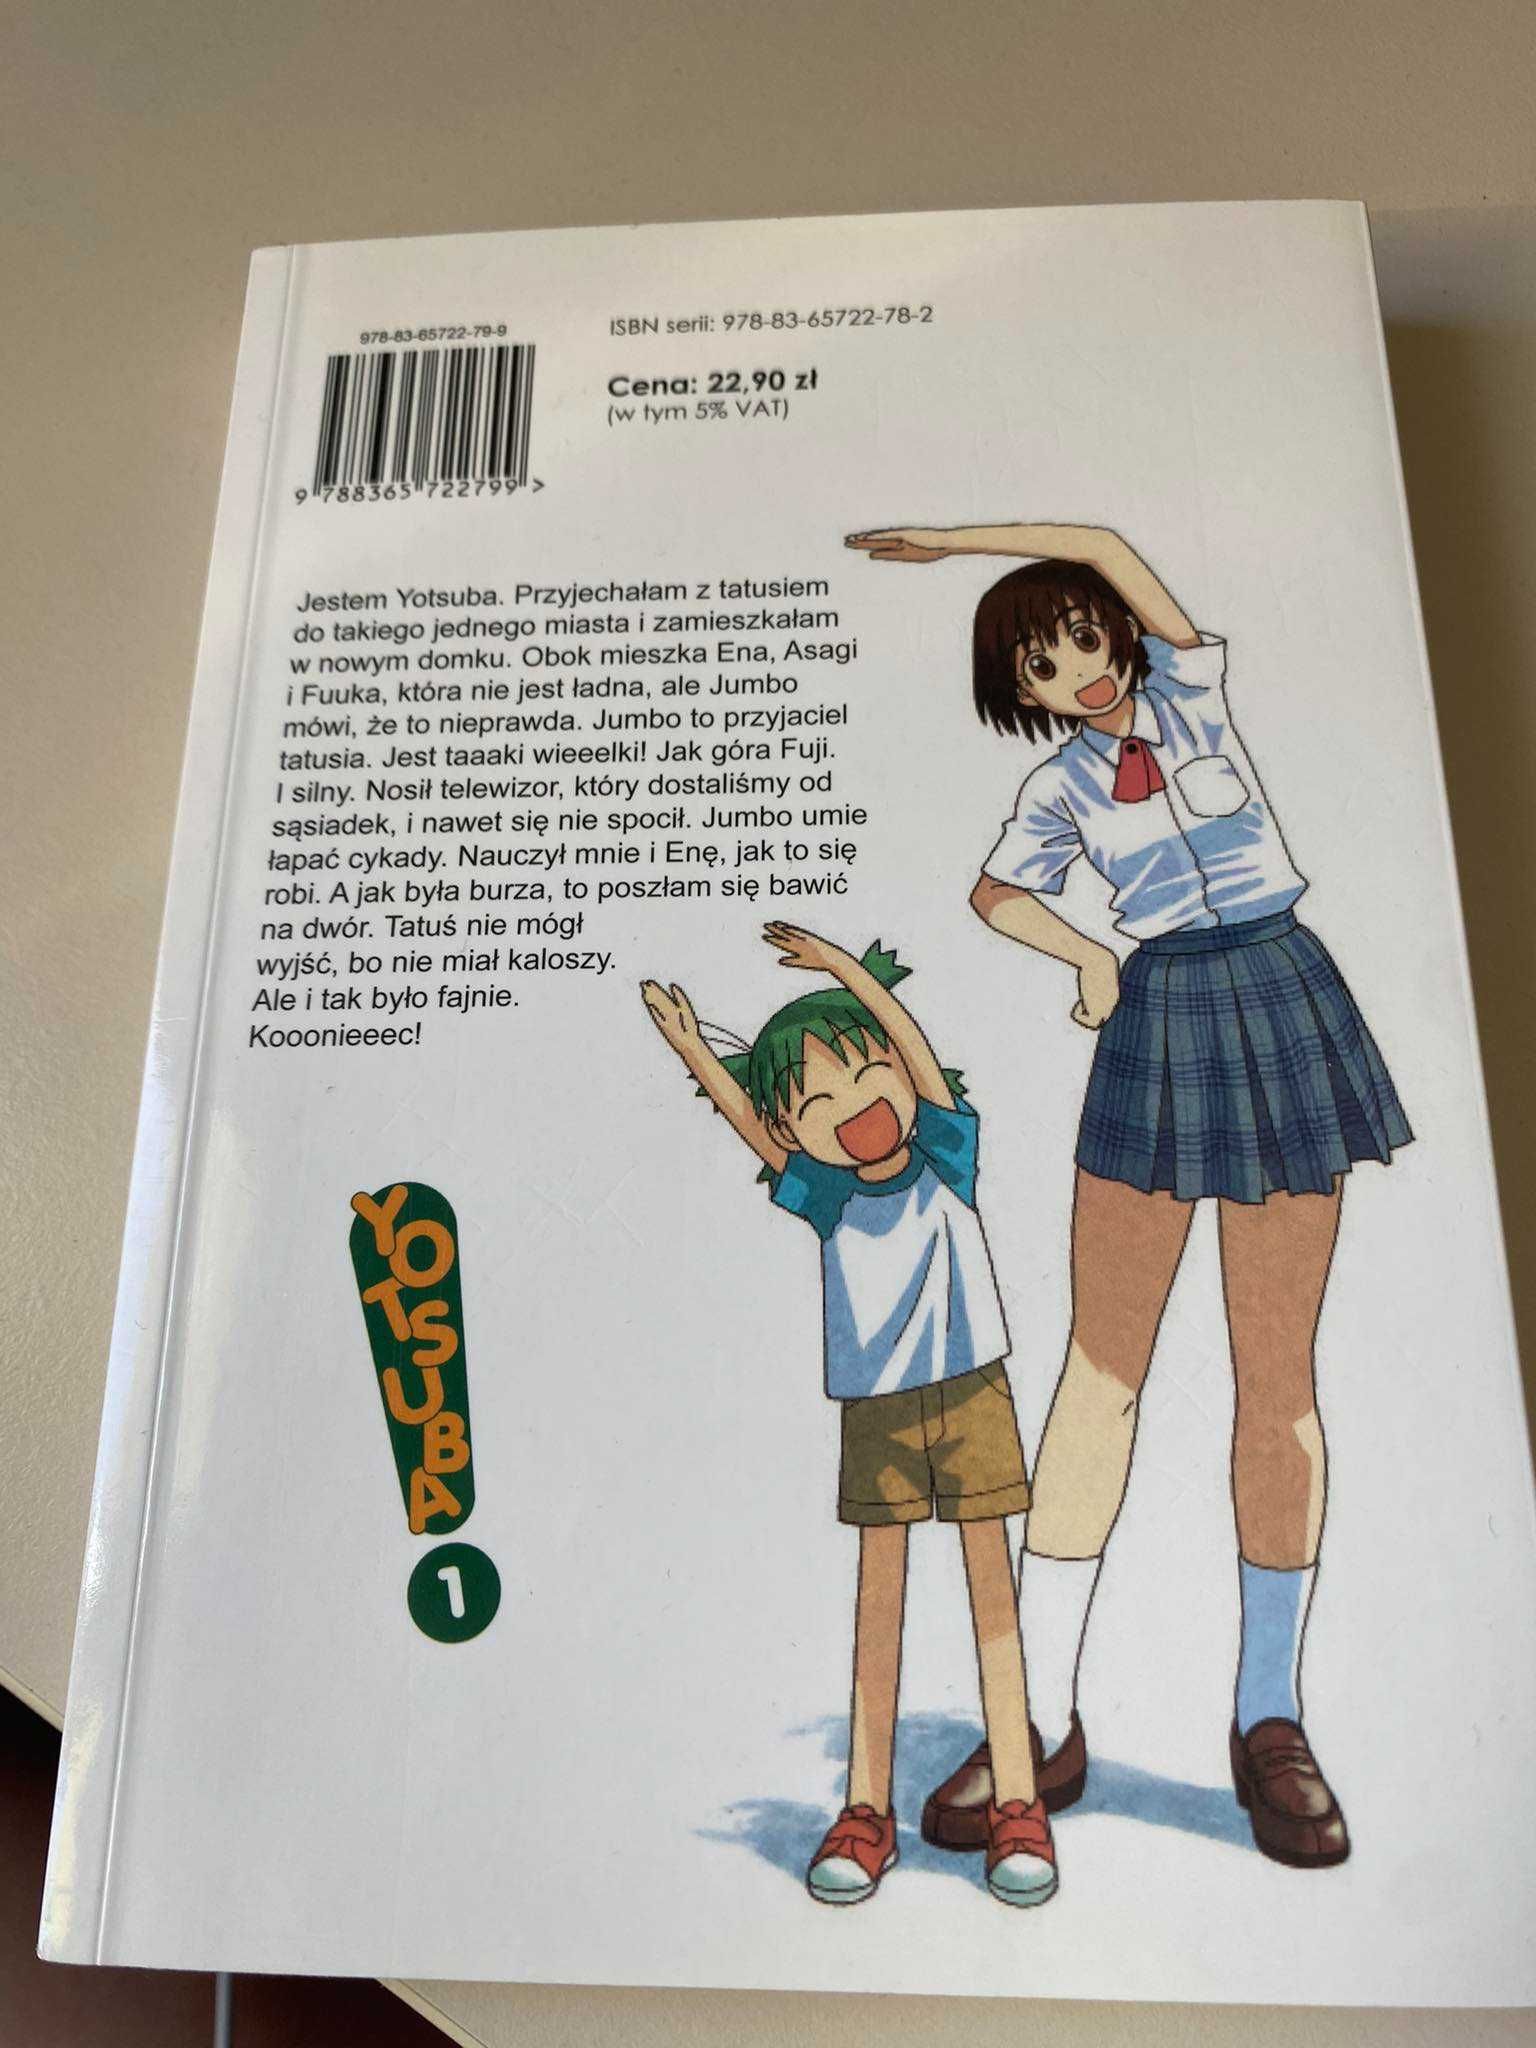 Yotsuba! manga tom 1